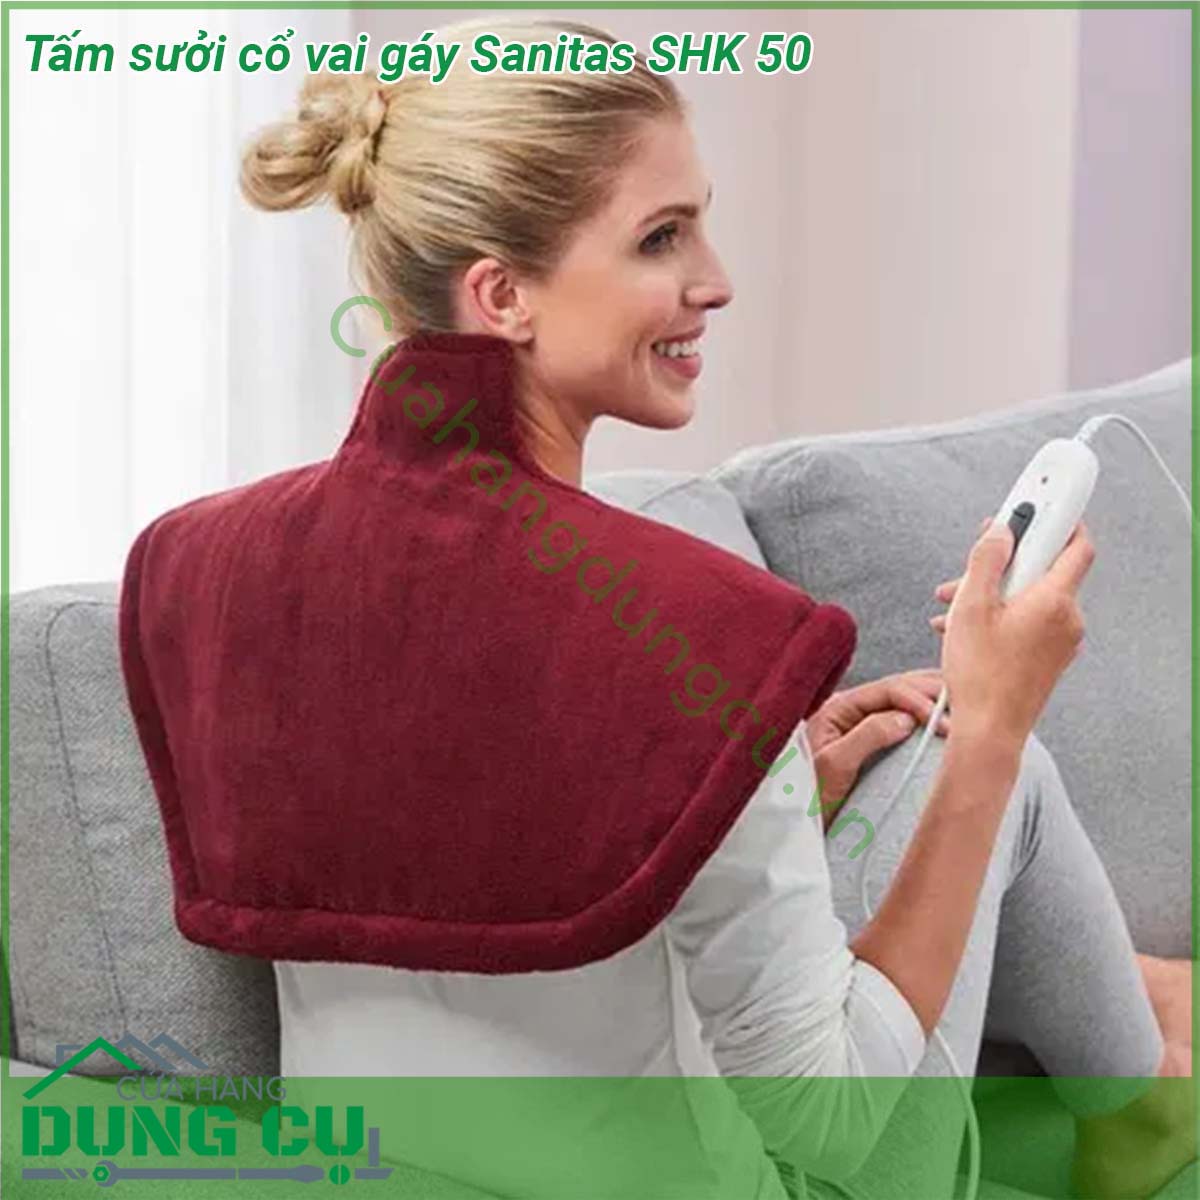 Tấm sưởi cổ vai gáy Sanitas SHK 50 với kiểu dáng tiện dụng nó mang lại sự ấm áp dễ chịu đặc biệt cho hai phần cơ thể là vai và cổ giúp bạn thư giãn sau một ngày vất vả